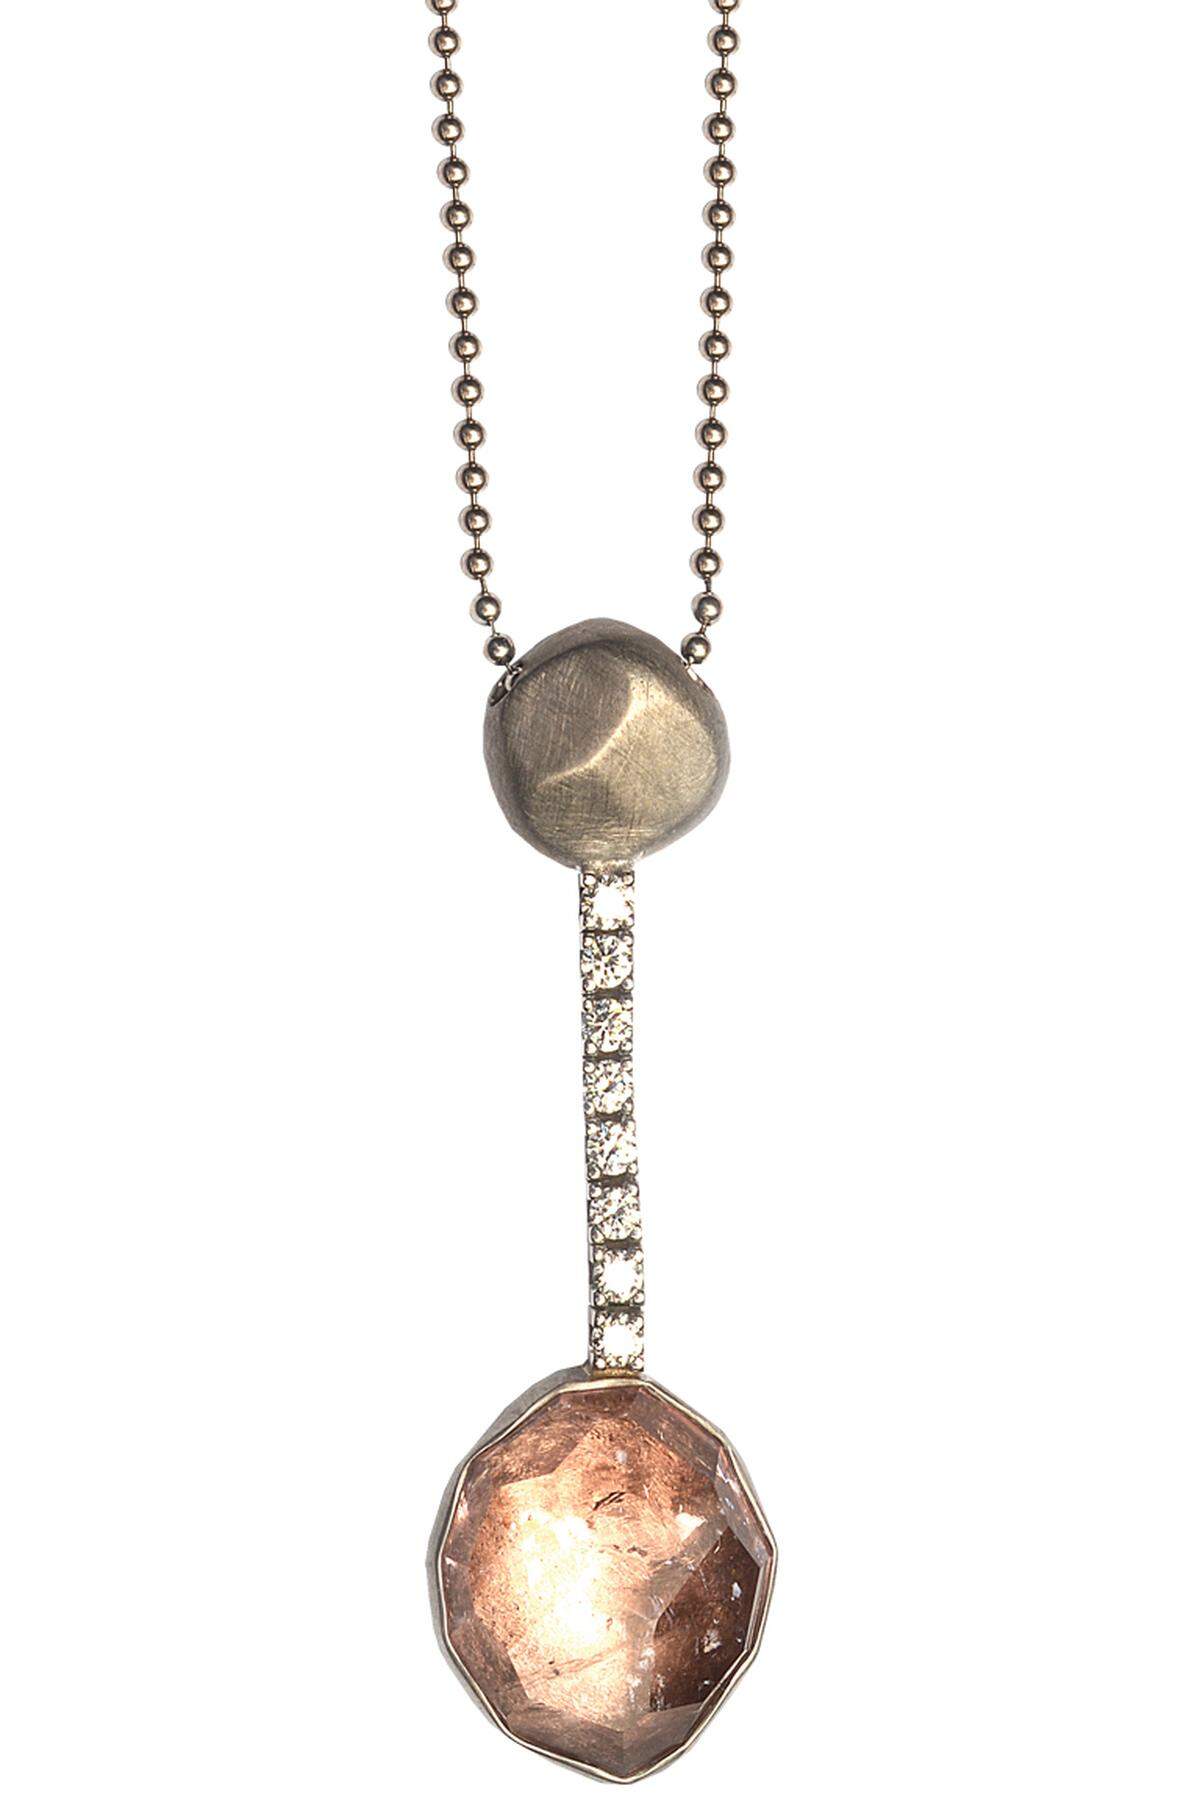 Skrein: Anhänger „Rocks“ mit Diamantlinie auf Kugelkette aus fairem Gold, Morganit, Diamanten, 3790 Euro